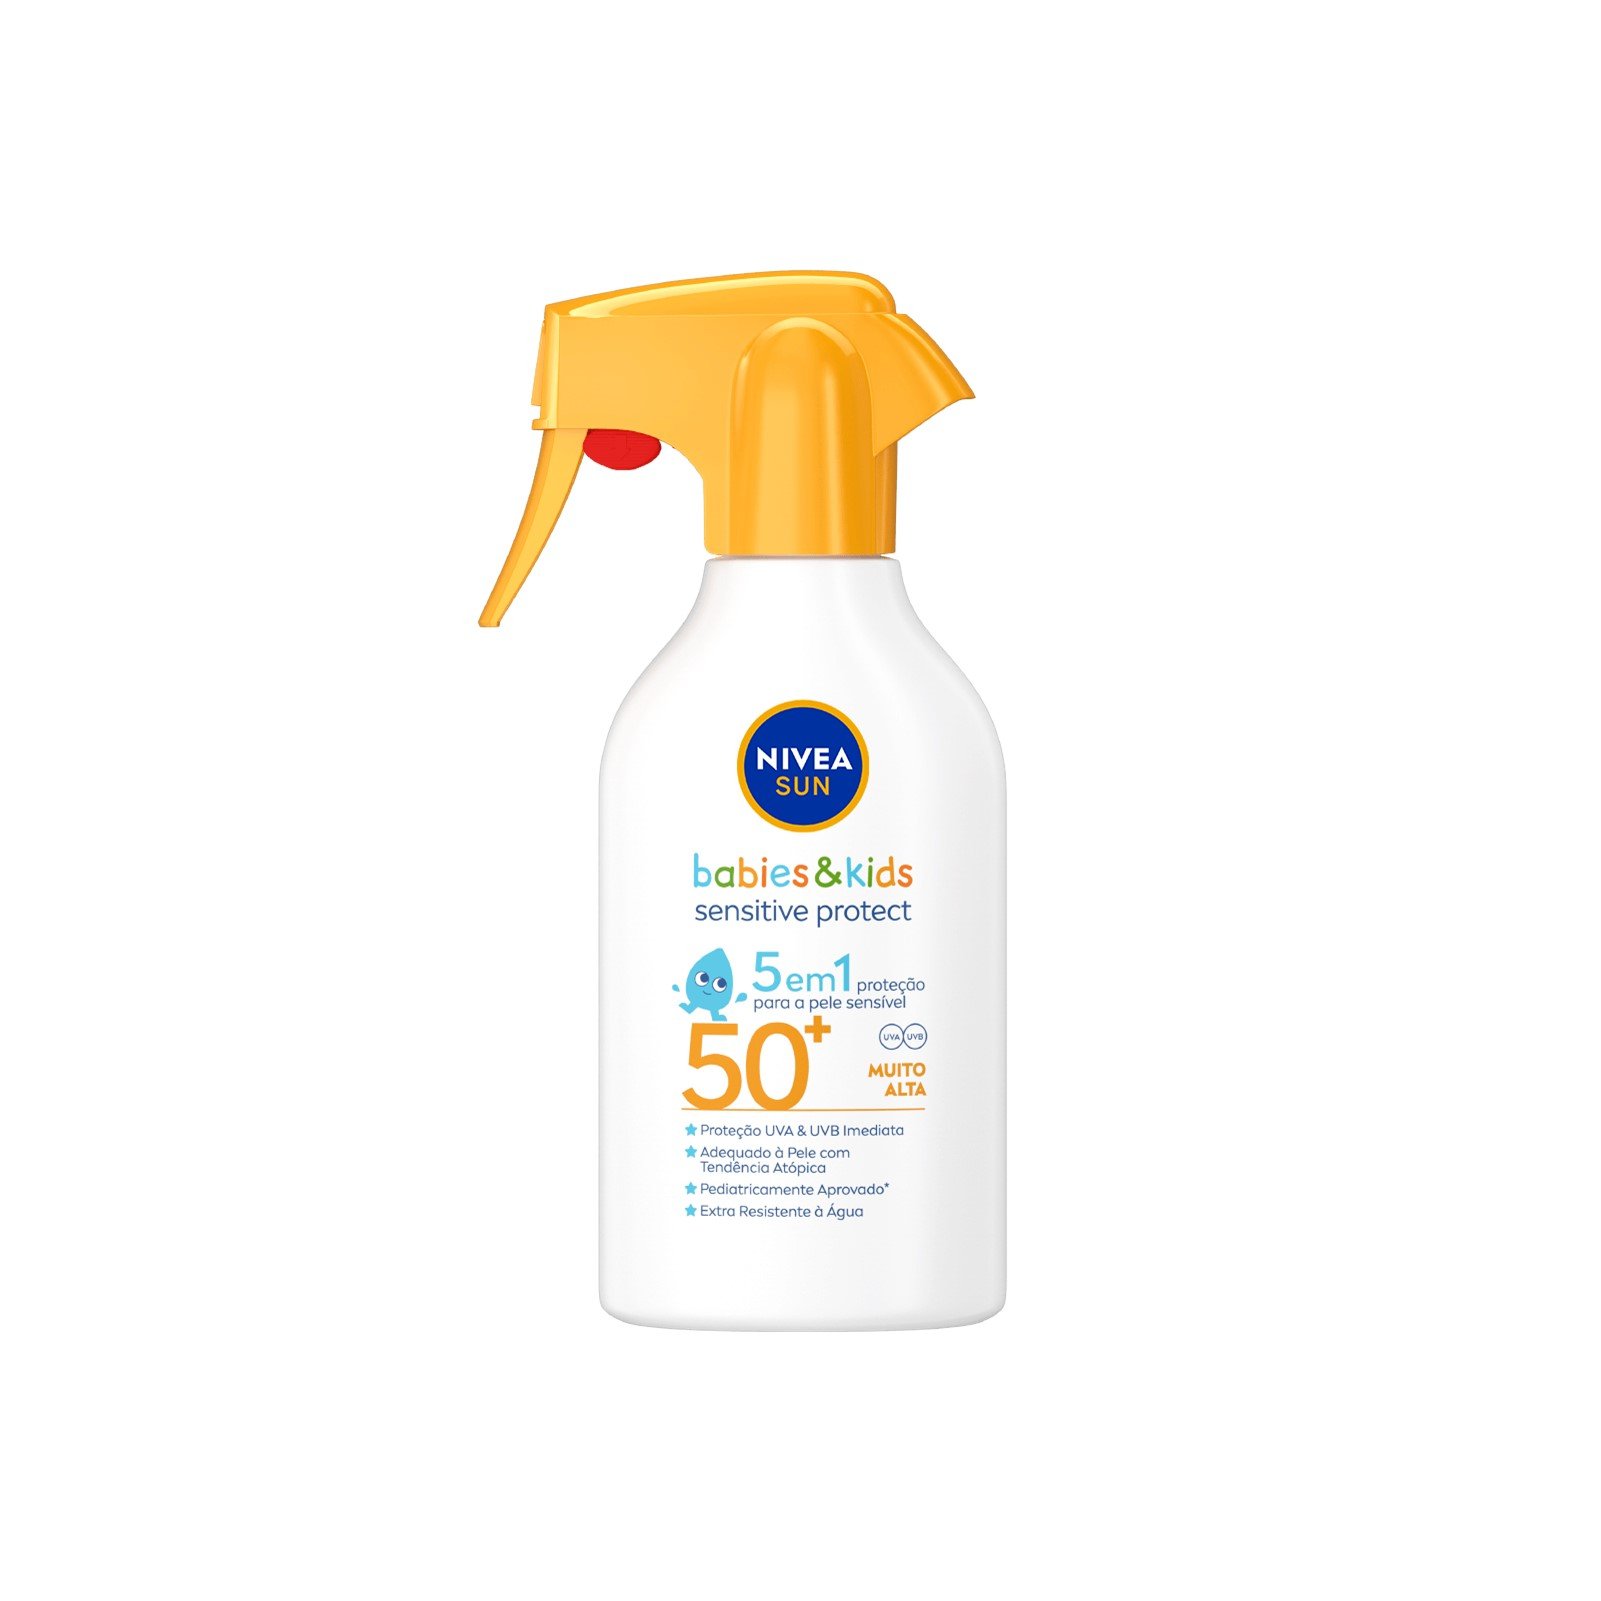 Buy Nivea Sun Babies & Kids Sensitive Protect 5-in-1 Spray SPF50+ 270ml (9.13 fl oz) ·